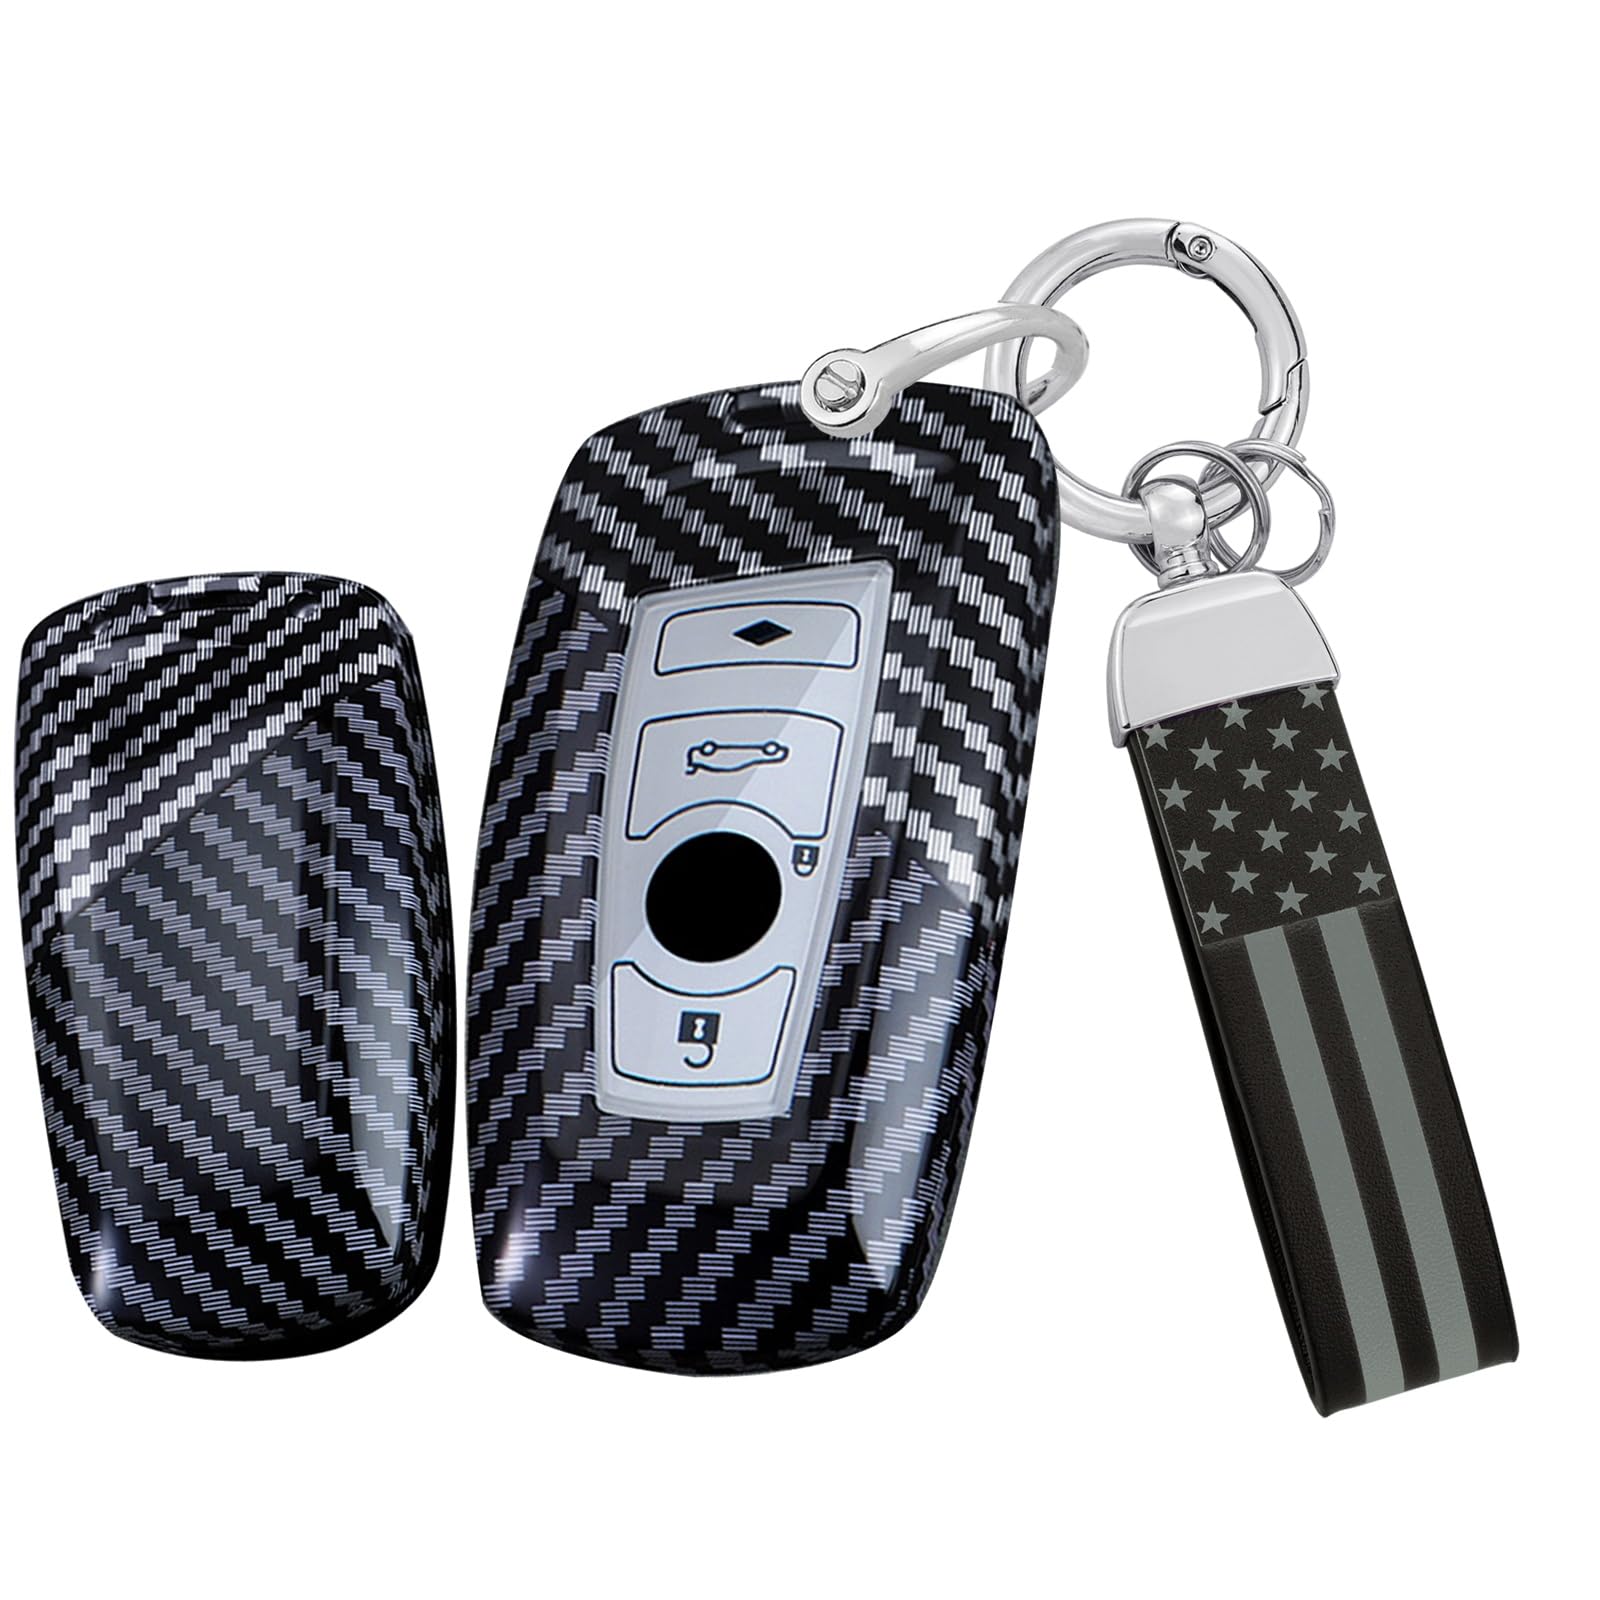 Ysbxitu Kohlefaser Textur Schlüsselhülle für BMW Schlüsselanhänger Passt für BMW F20 F21 F30 F31 F34 F35 F80 F32 F33 F82 F83 F07 F10 F11 F18 F12 F13 F01 F02 Fernbedienung Cover Geschenkidee Weiß von Ysbxitu